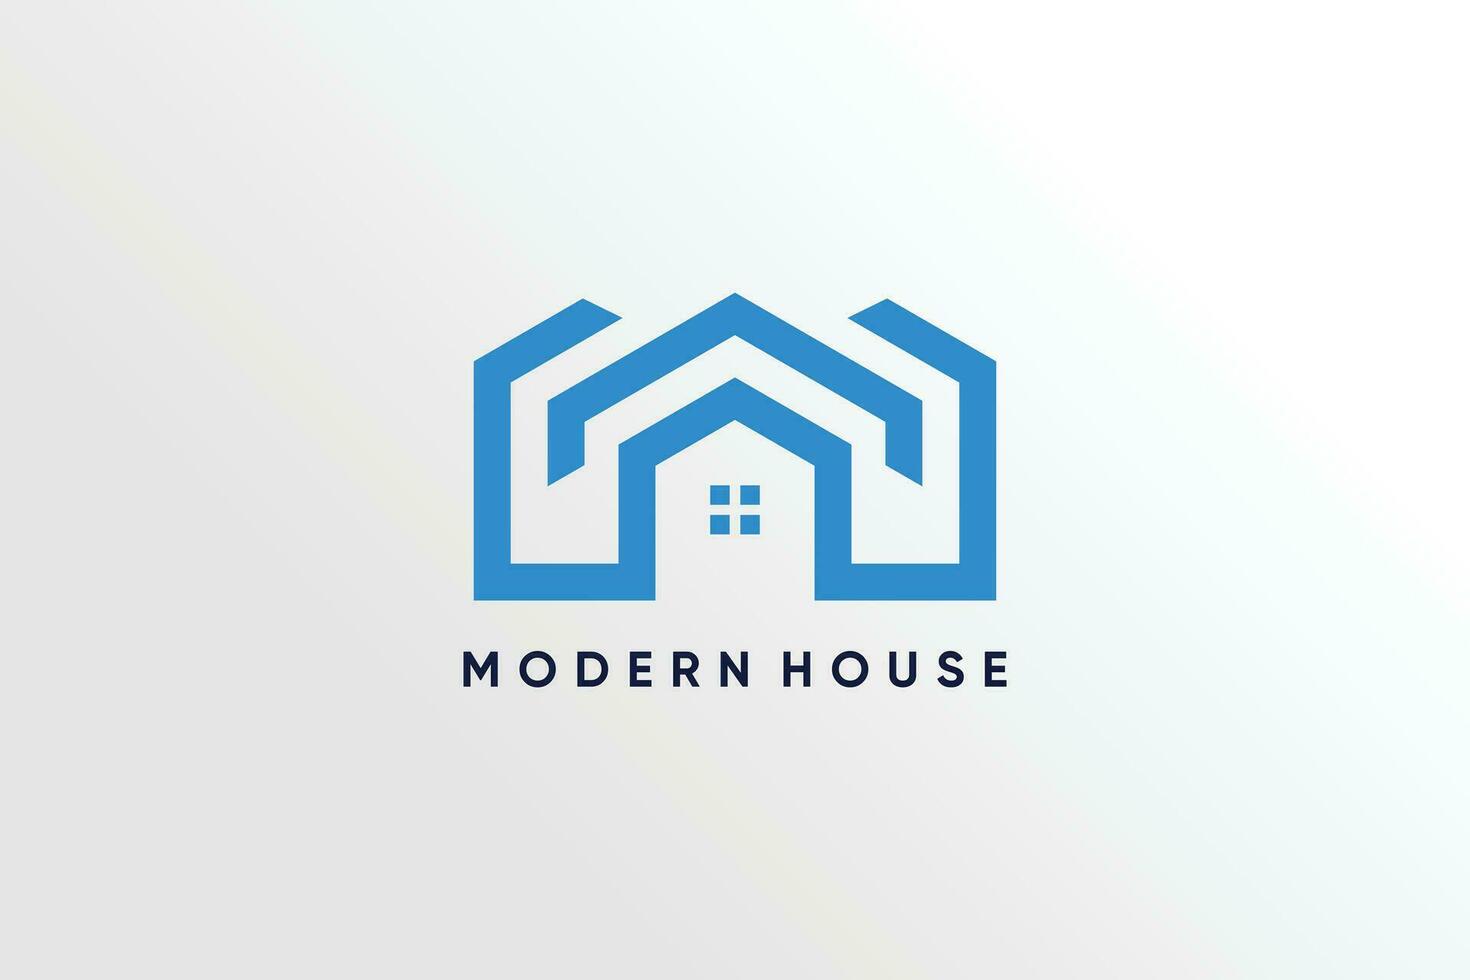 edificio logo vector con moderno concepto diseño idea